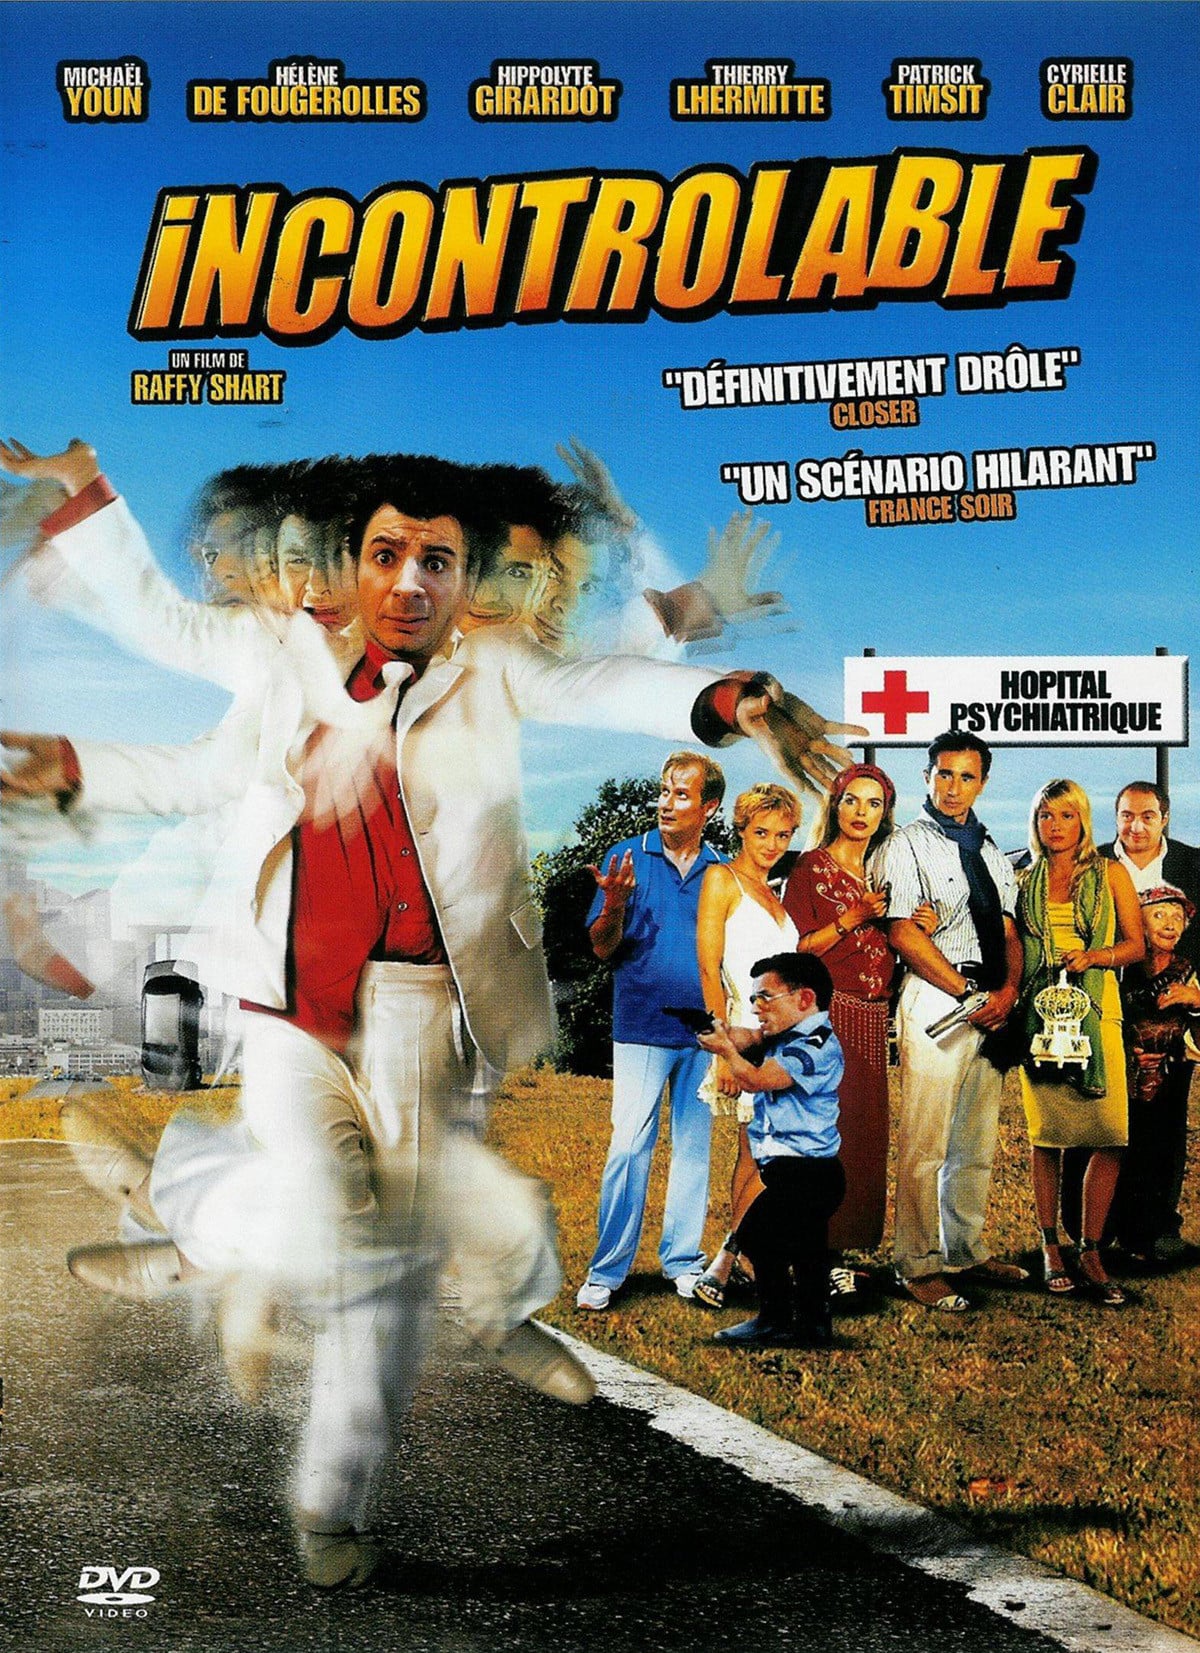 Affiche du film "Incontrôlable"